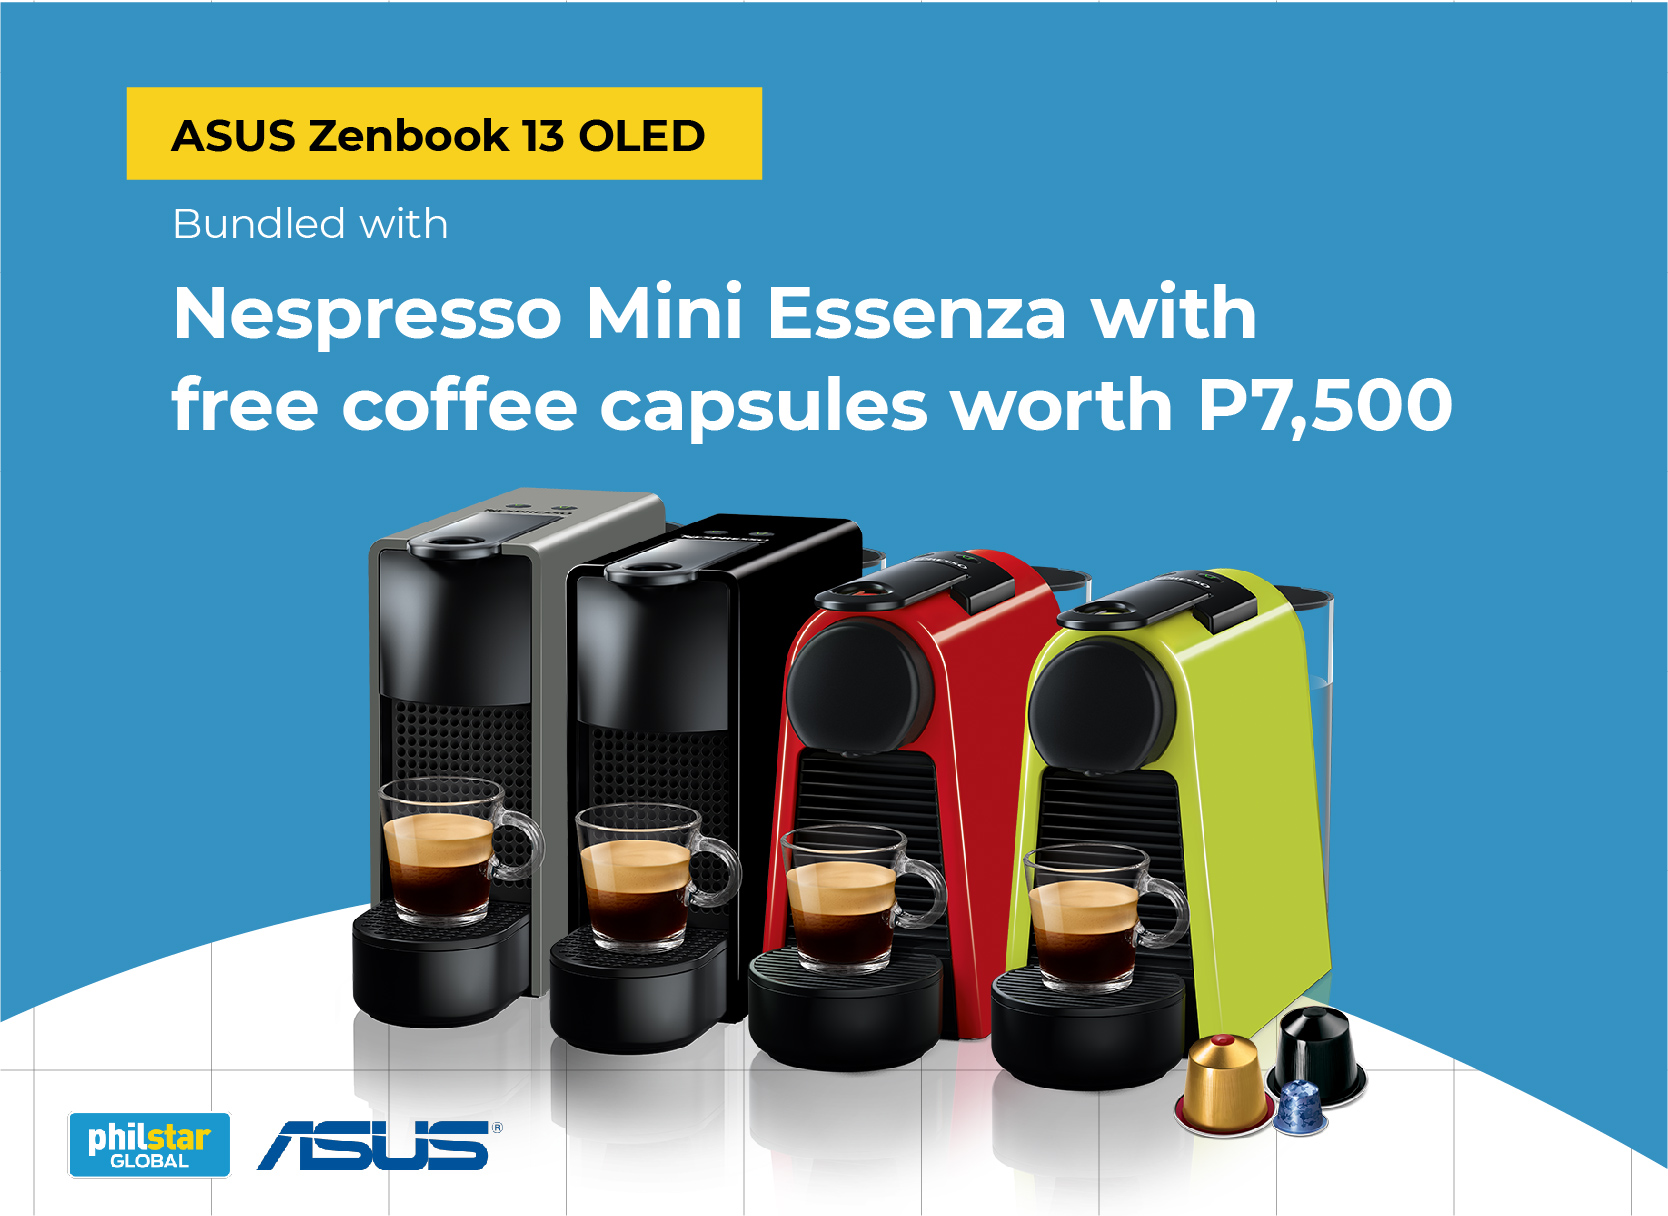 Nespresso Mini Essenza